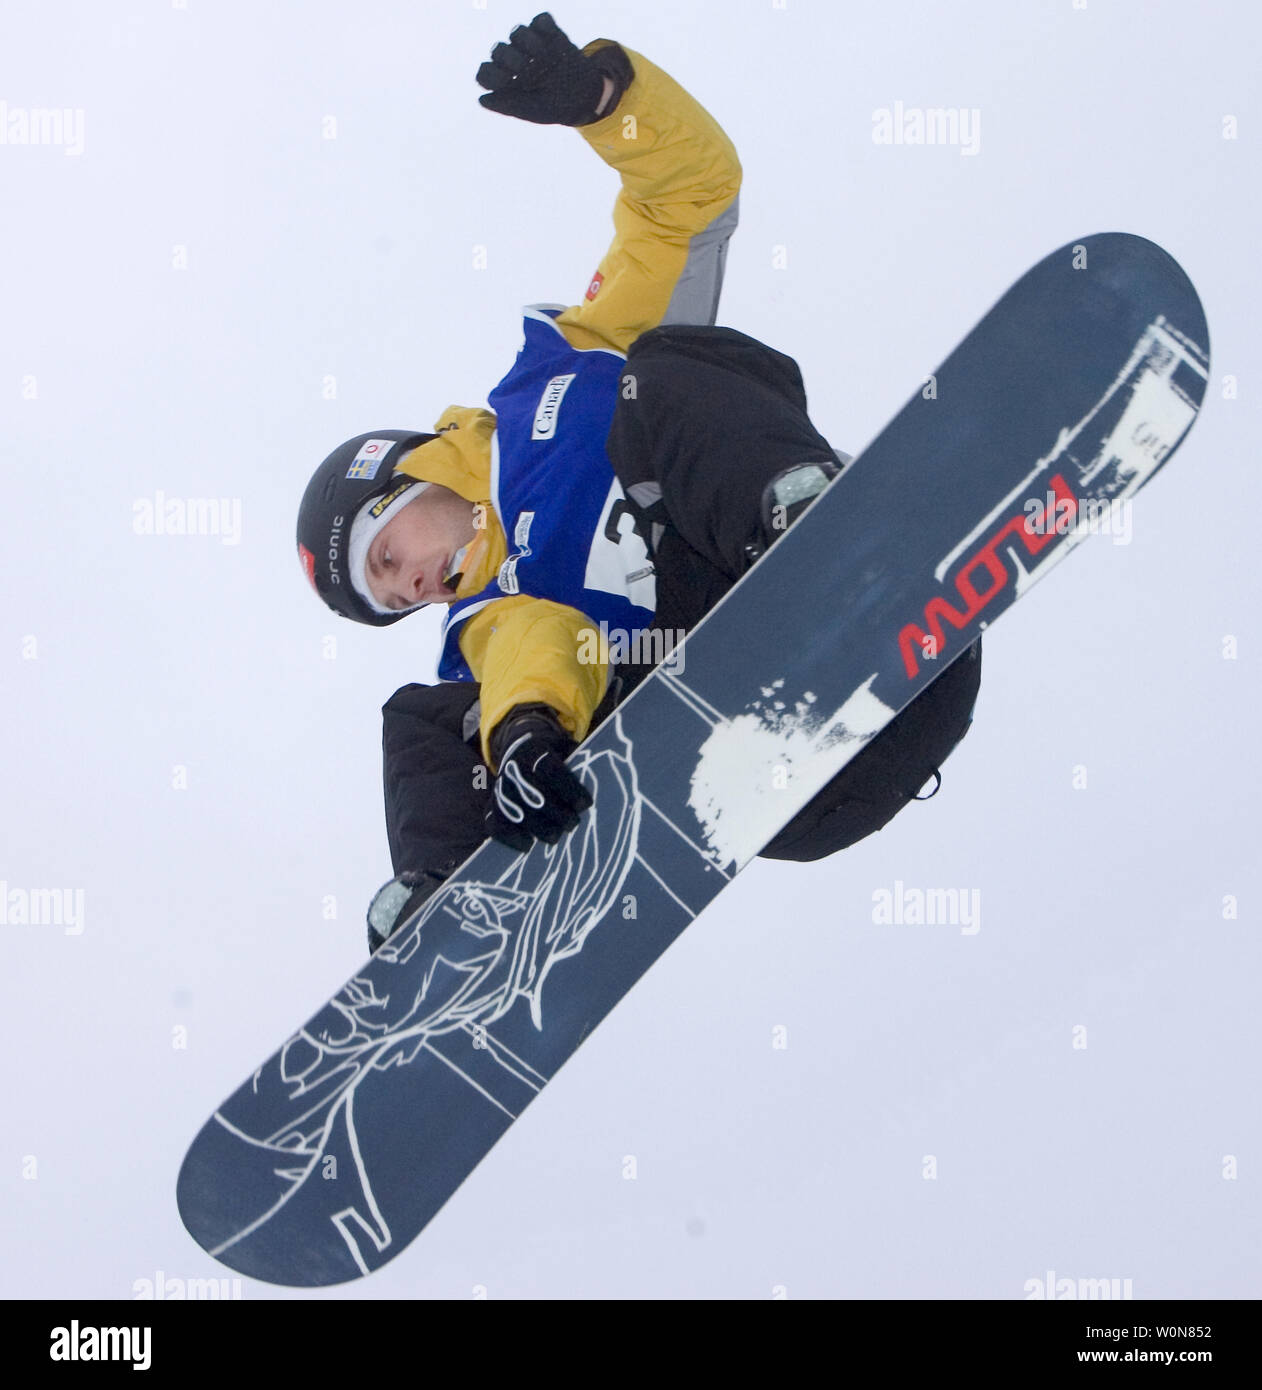 Sautant dans la finale, Andreas Jakobsson de Suède terres avec le bronze au men's Big Air cas de la FIS Snowboard World Championships le Whistler Blackcomb Mountain, le 21 janvier 2005. (Photo d'UPI/Heinz Ruckemann) Banque D'Images